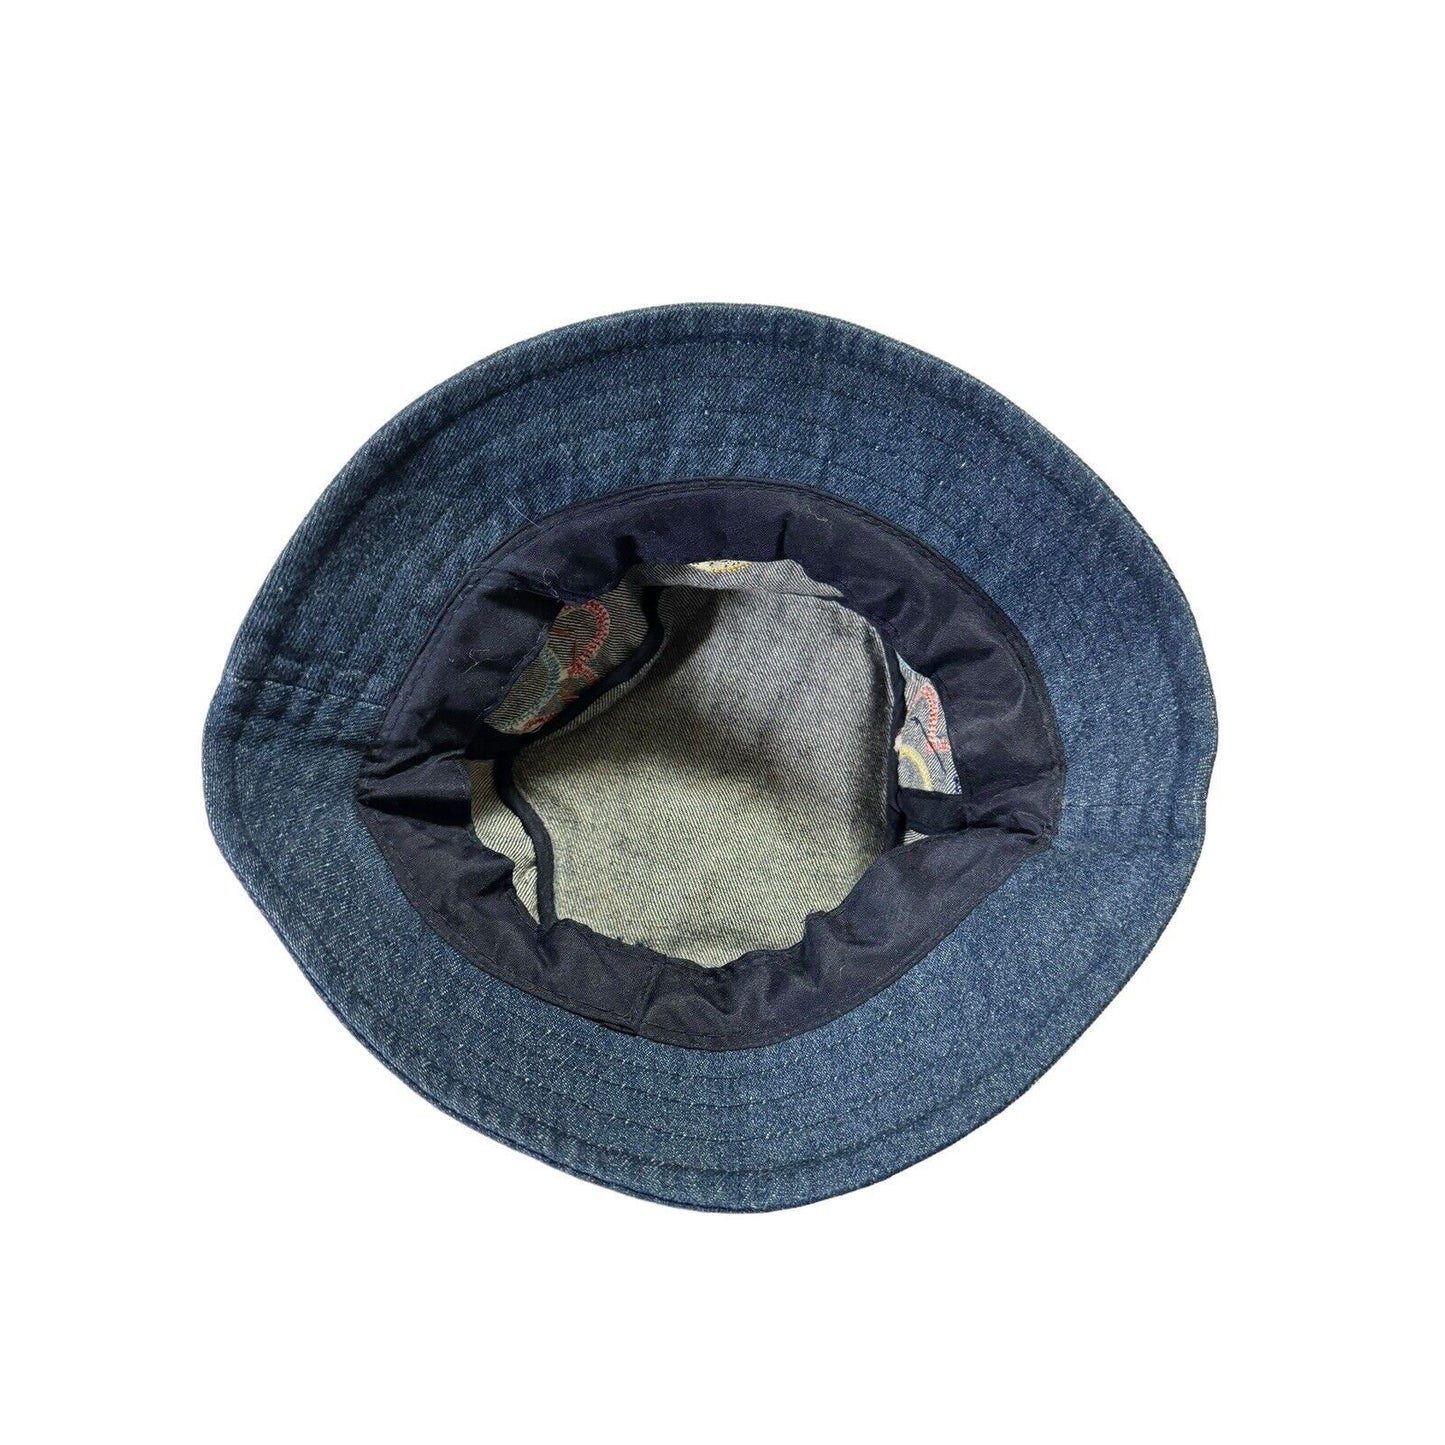 Vintage Disney Lizzie McGuire Embroidered Denim Bucket Hat Youth Size 7-14 Y2K